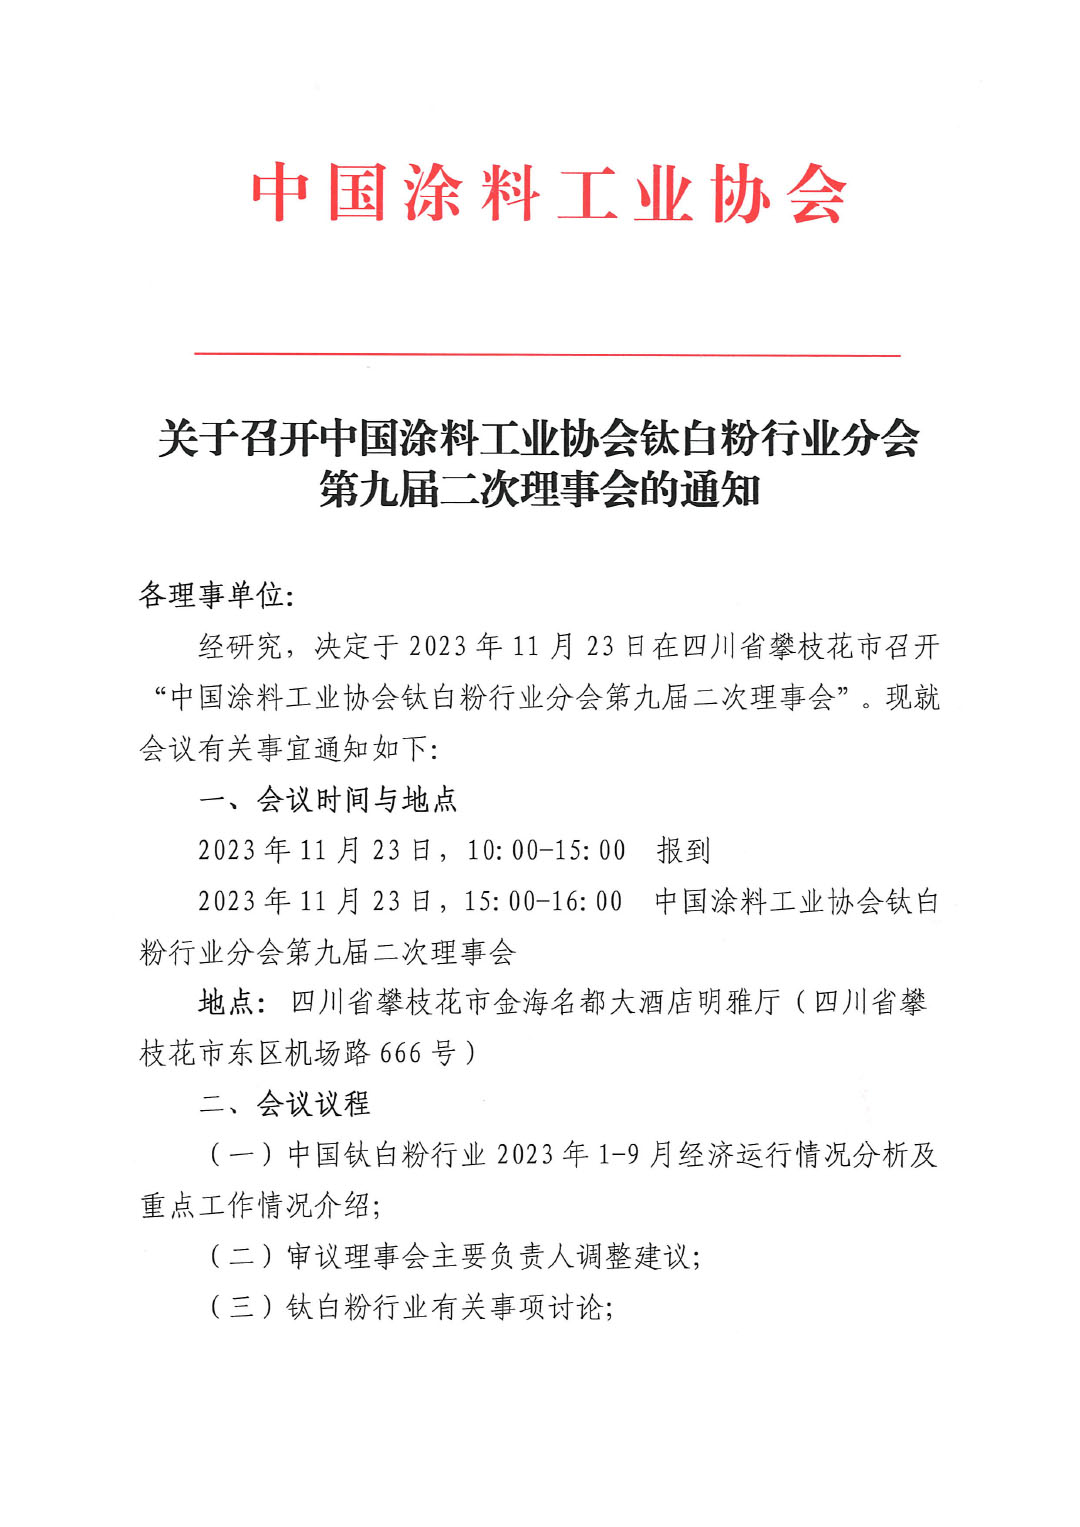 关于召开中国涂料工业协会钛白粉行业分会理事会的通知-1